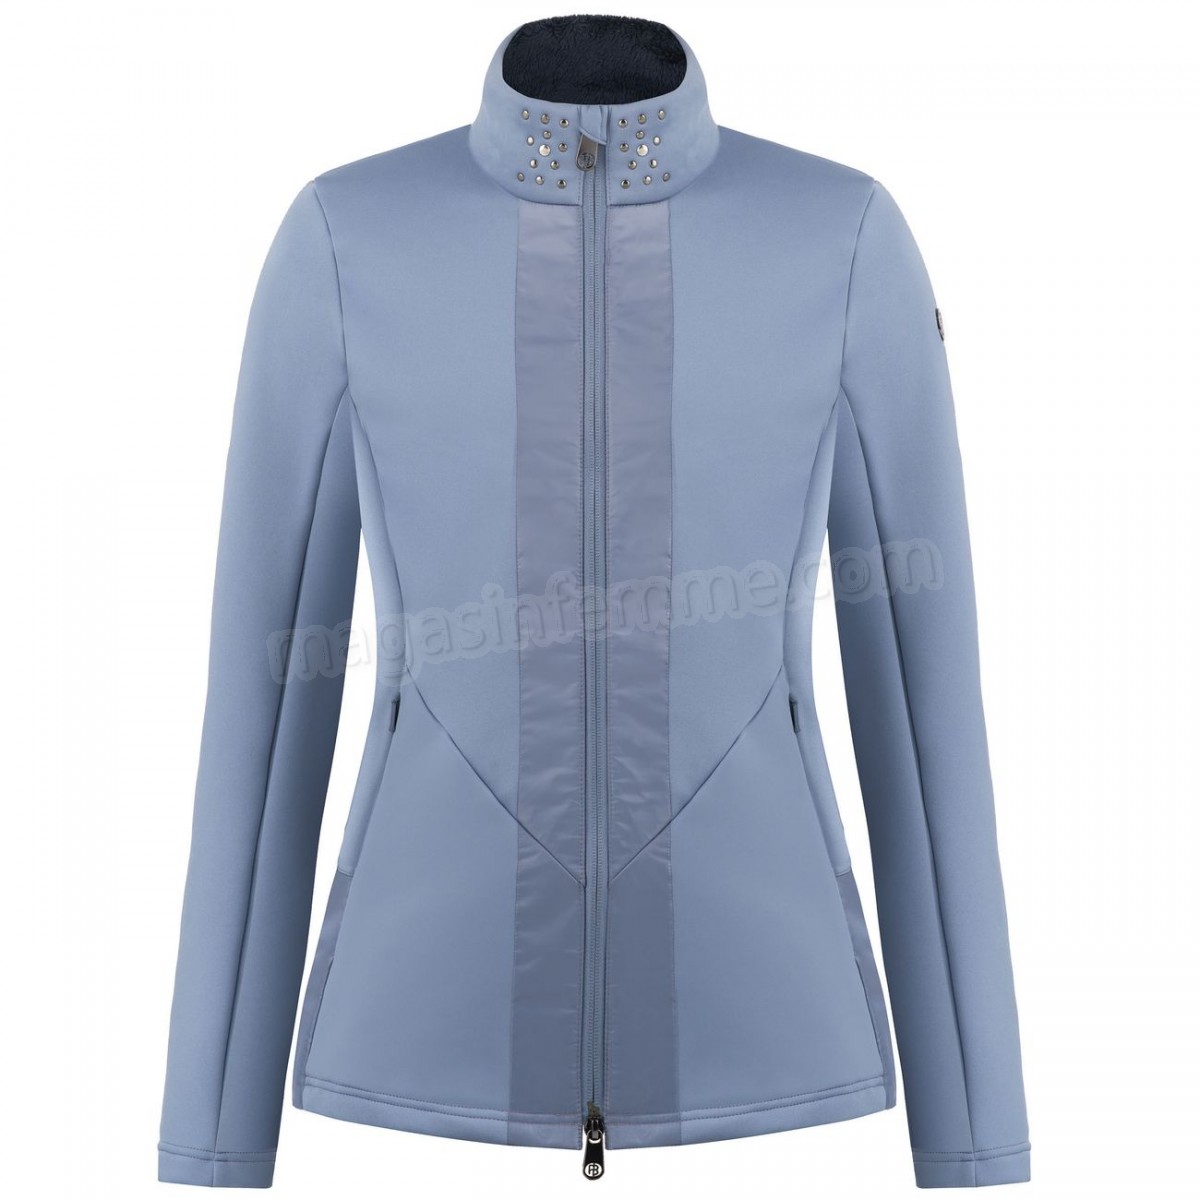 Poivre Blanc-Sports d'hiver femme POIVRE BLANC Veste En Polaire Poivre Blanc Hybrid Stretch Fleece Jacket 1702 Shadow Blue Femme en solde - -1